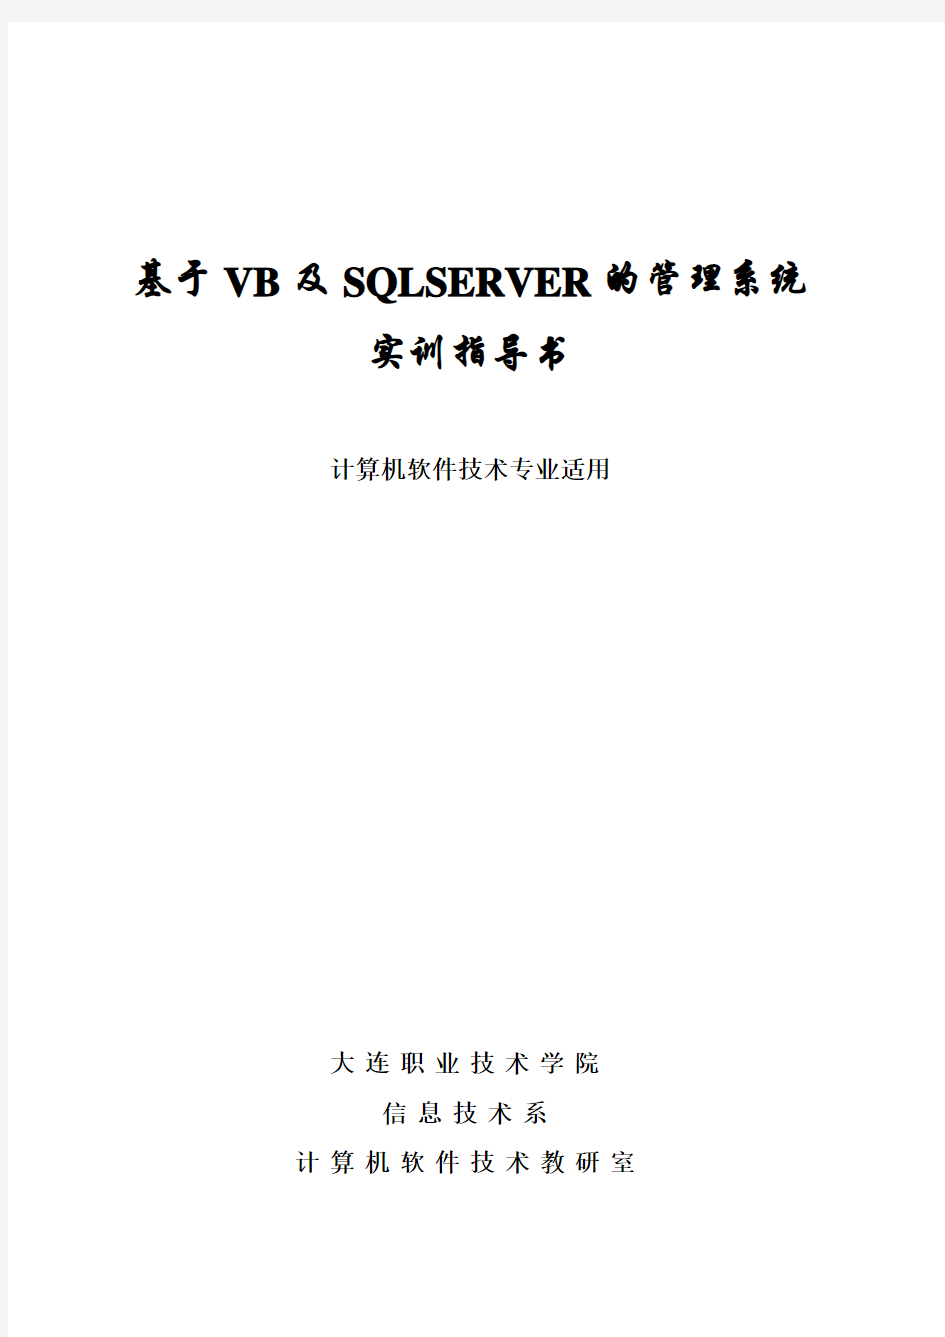 基于VB及SQLSERVER的管理系统实训指导书